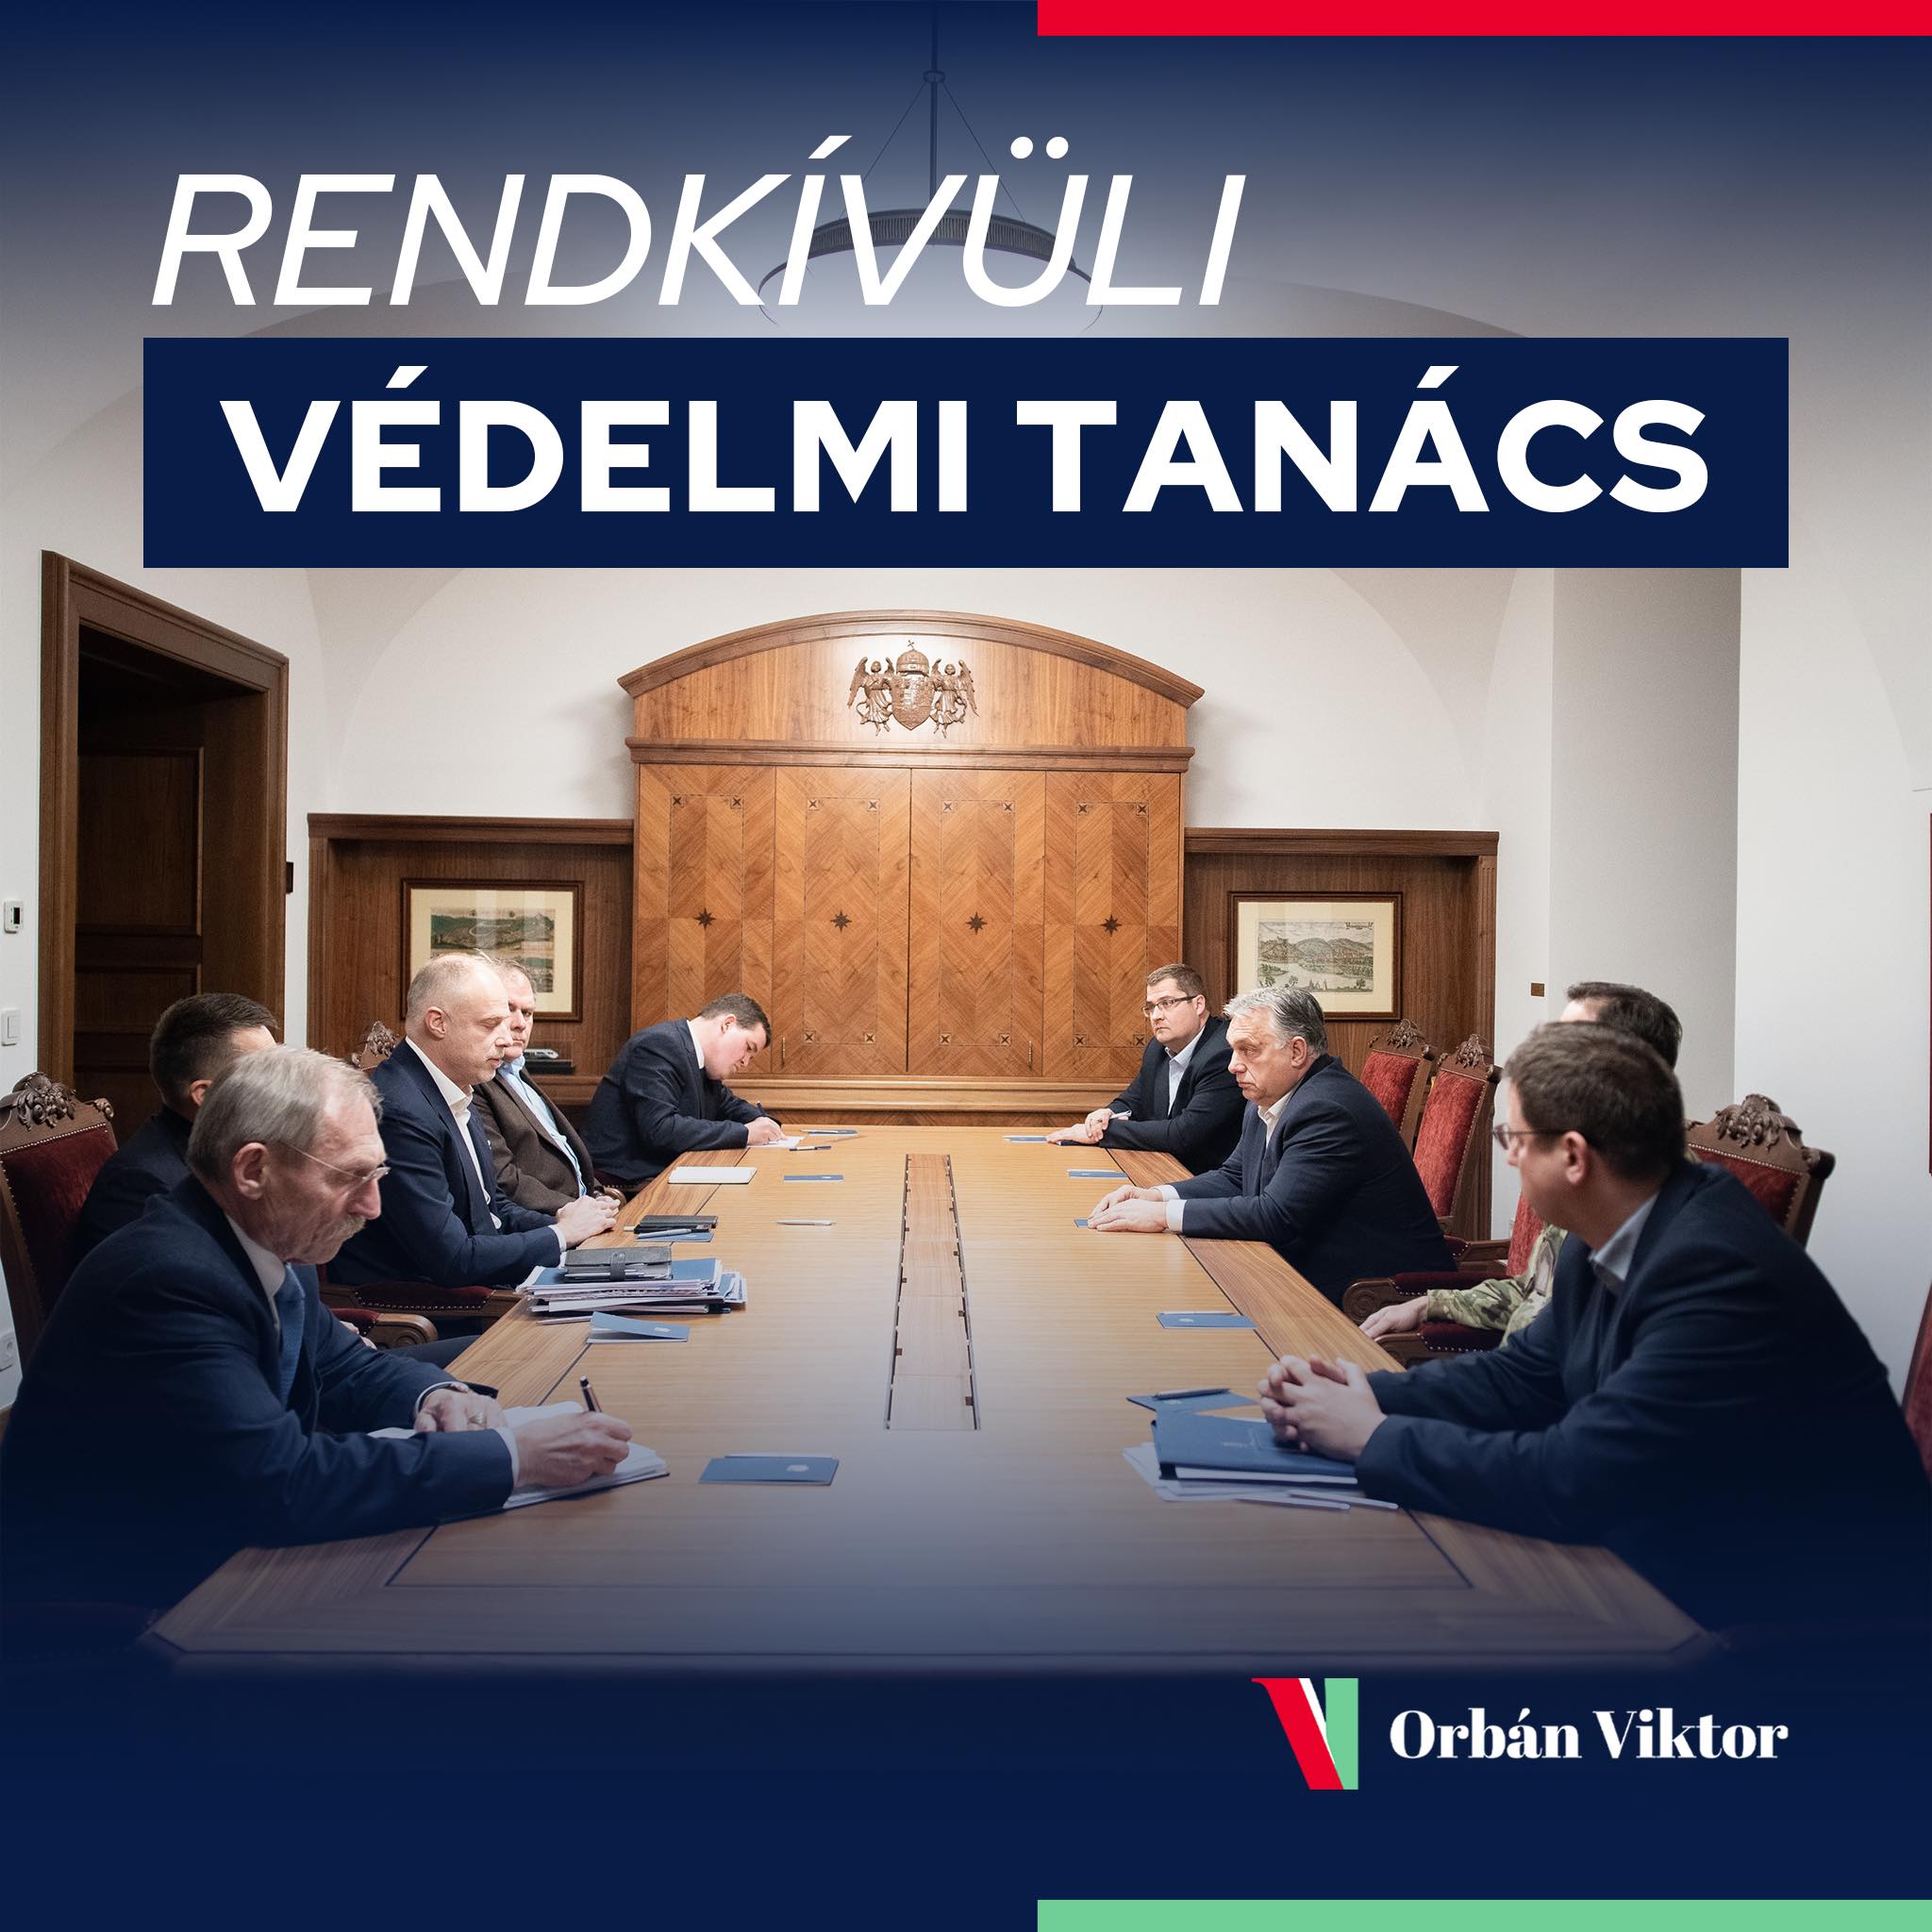 Orbán Viktor vezetésével rendkívüli ülést tartott a Védelmi Tanács a Karmelitában